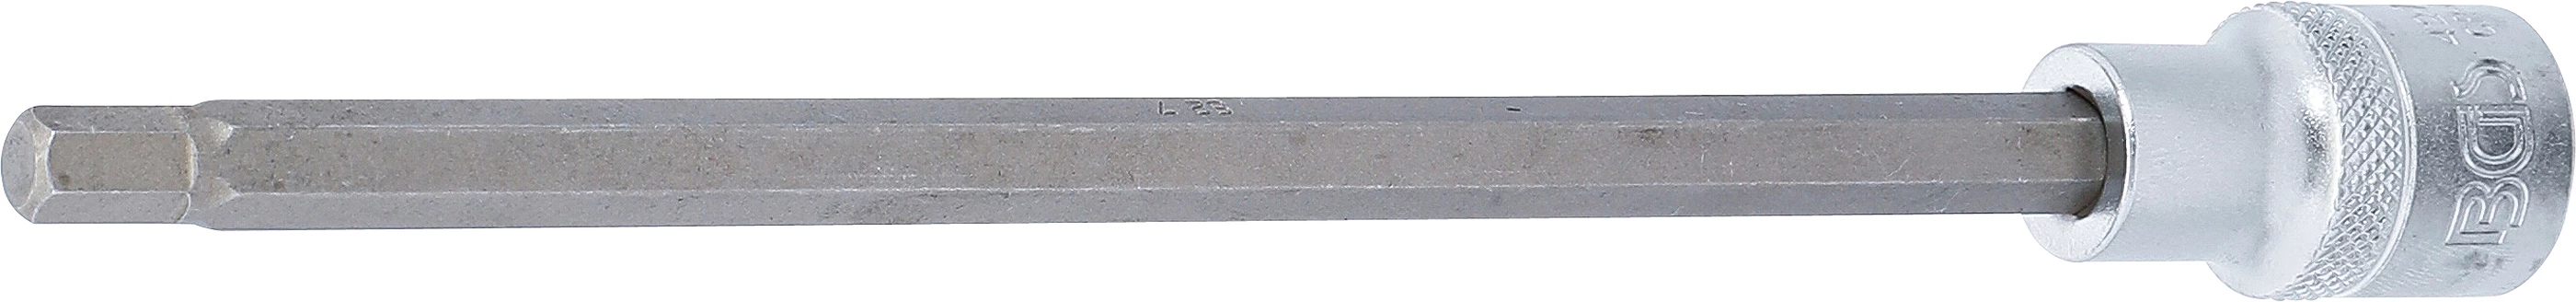 Bit-Einsatz - Länge 200 mm - 12,5 mm (1/2") - Innensechskant 7 mm